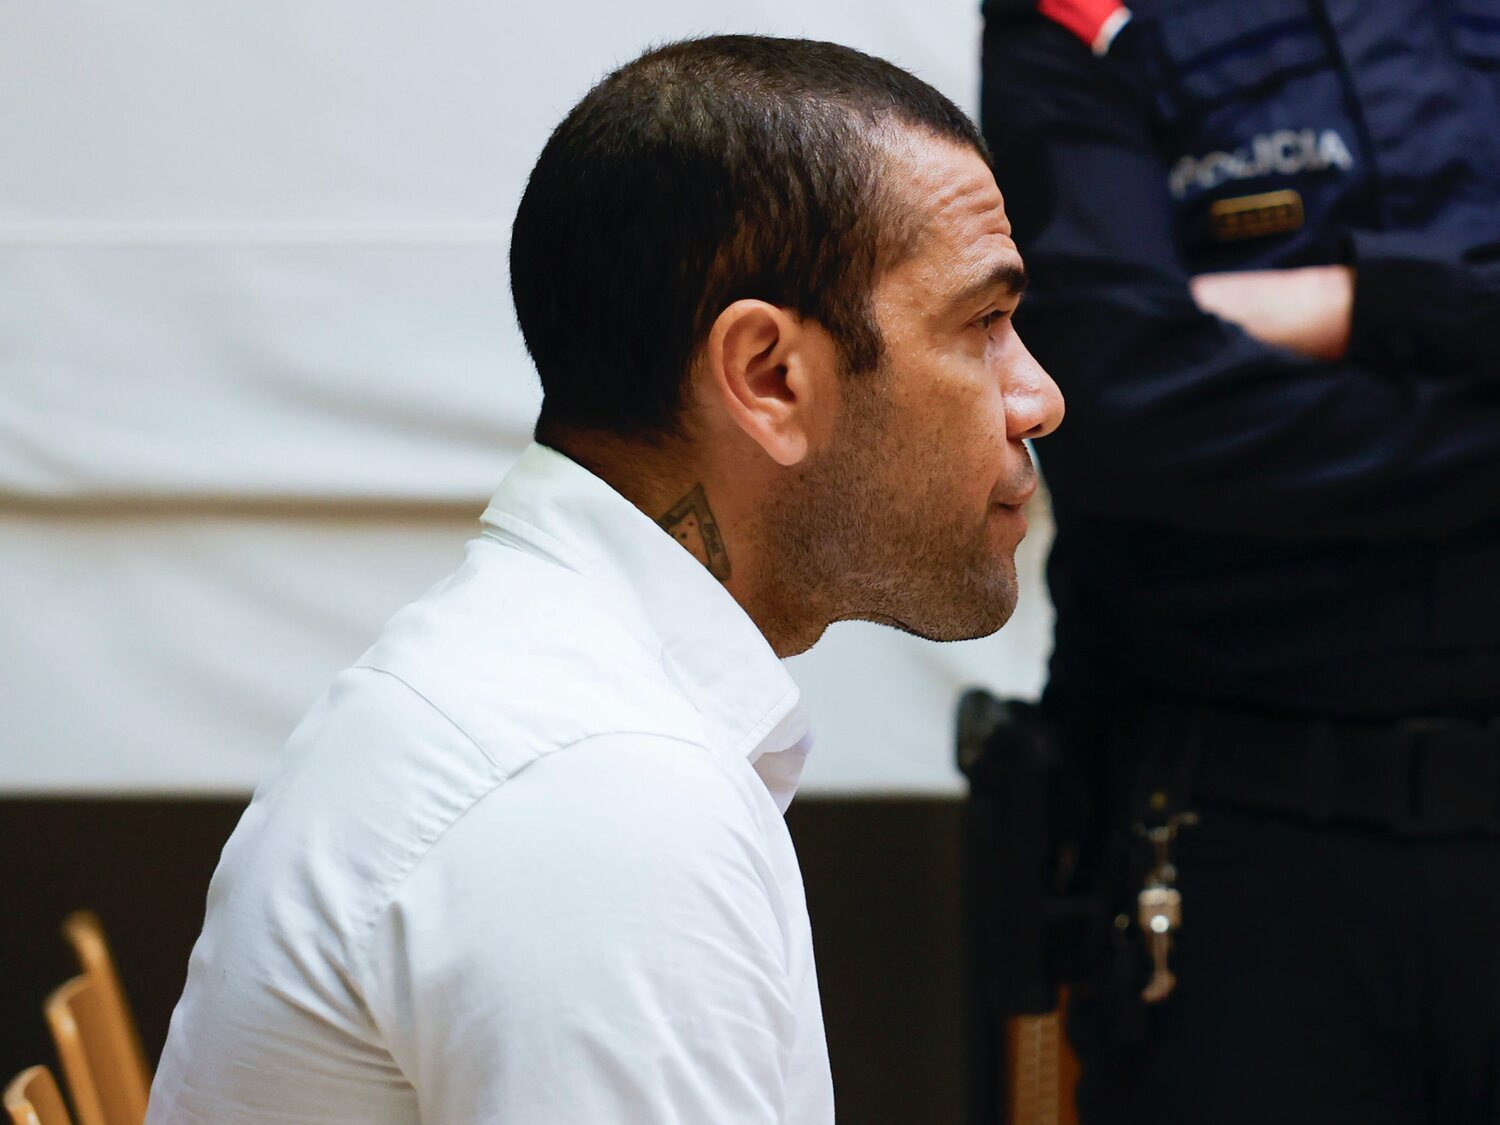 La defensa de Dani Alves recurre la sentencia y pide su salida inmediata de la cárcel